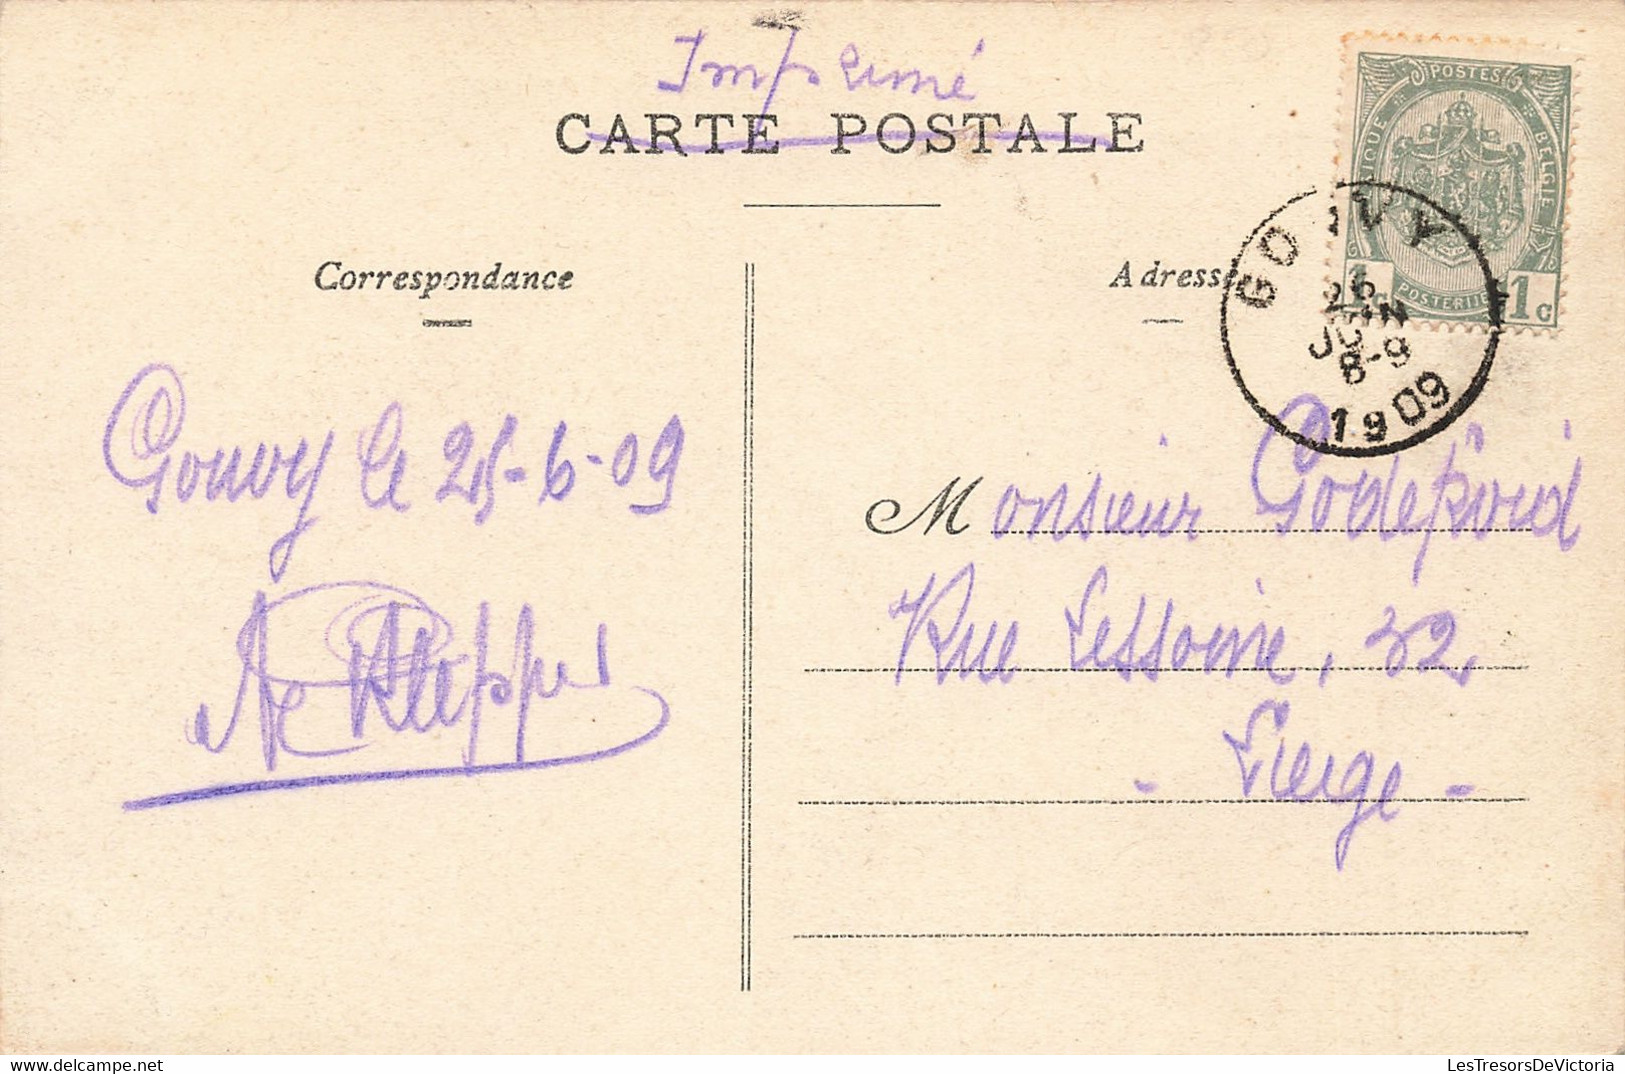 Belgique - Gouvy - Vue Générale De La Station - Colorisé - Oblitéré Gouvy 1909 - Carte Postale Ancienne - Gouvy